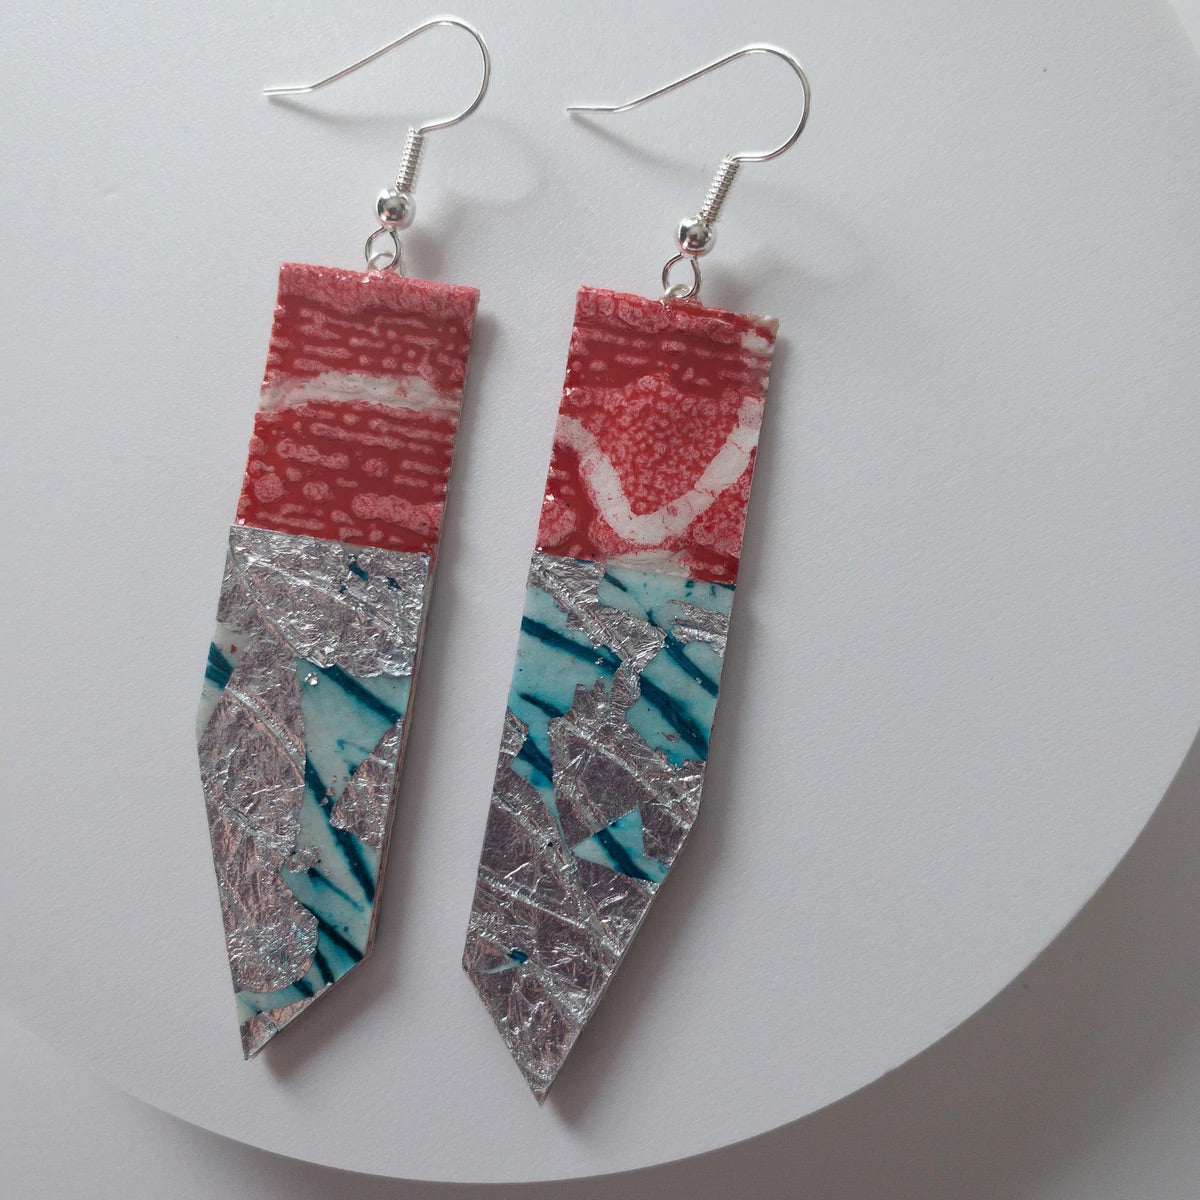 Edythe batik textile earrings in poppy/silver/aqua by Rohlu